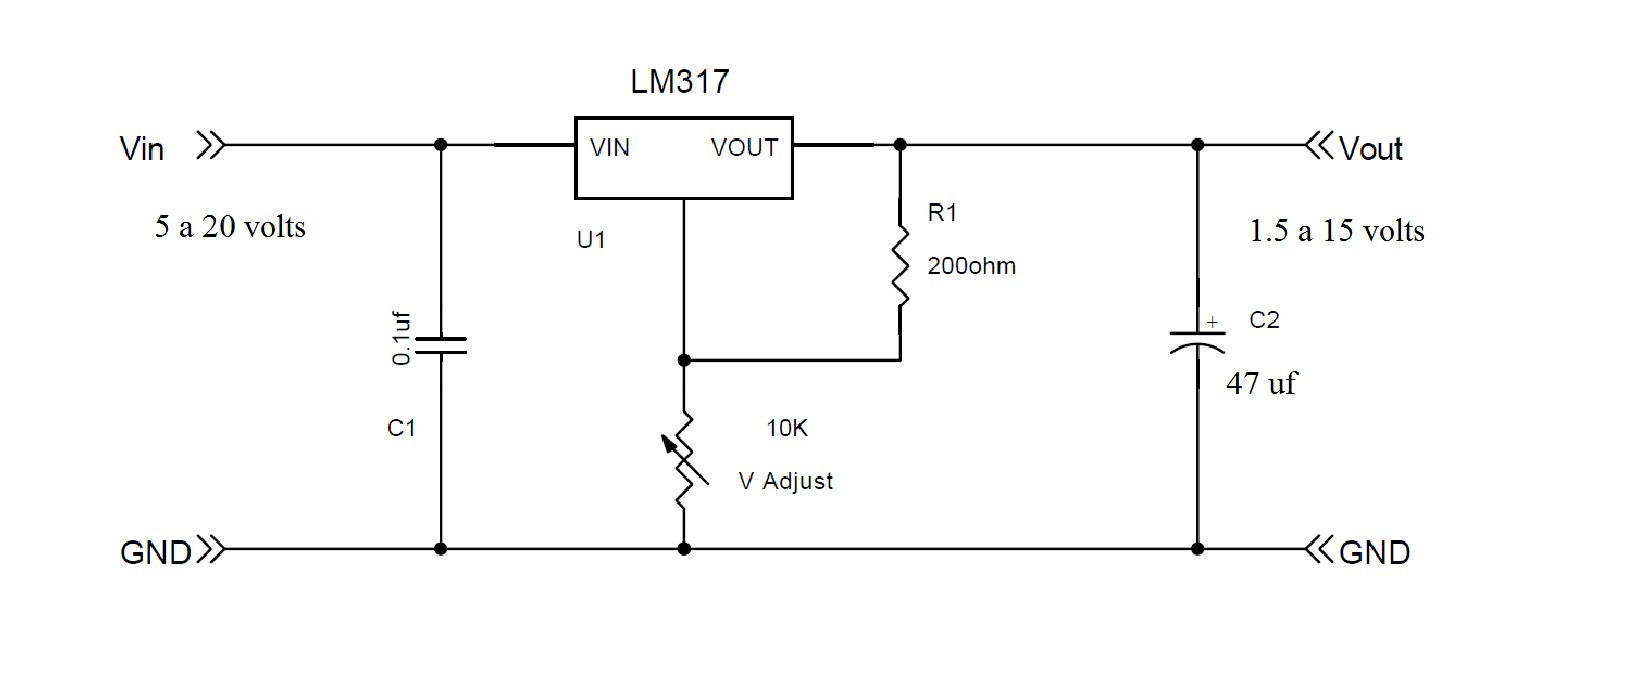 1 5 в 6 вольт. Стабилизатор напряжения 1.5 вольт схема. Стабилизатор напряжения на 12 вольт на lm317 схема. Lm317 5a. Стабилизатор напряжения 3.3 вольта схема.